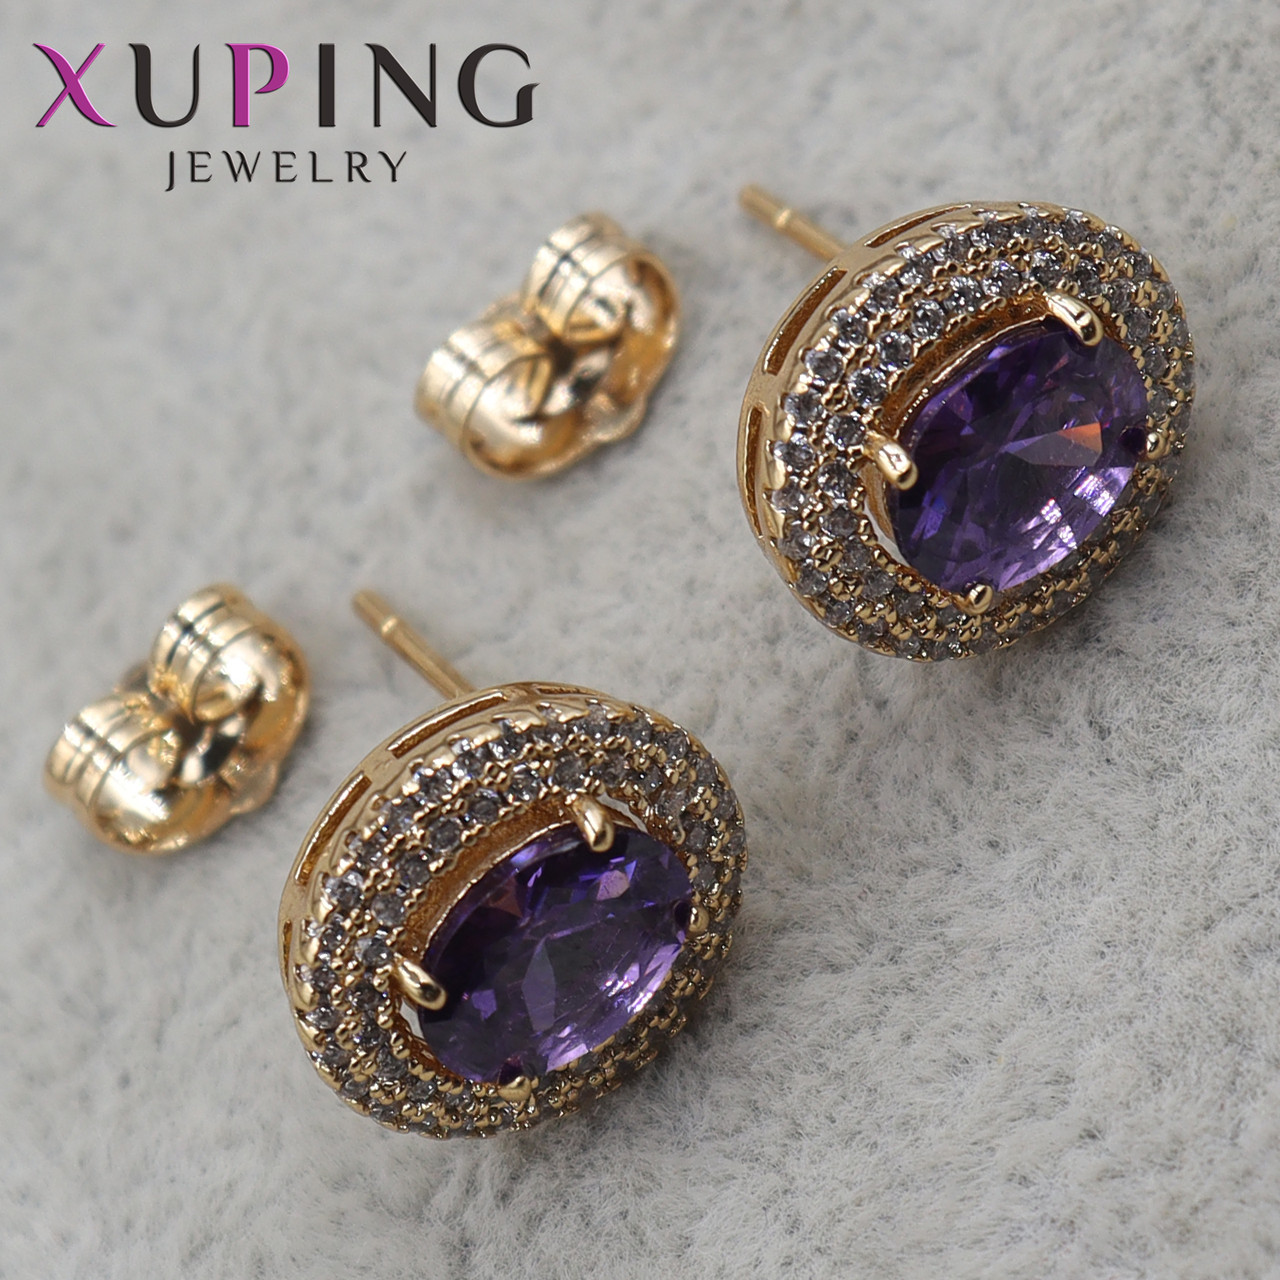 Серьги пуссеты гвоздики медицинское золото размер 12х10 мм фирма Xuping Jewelry с фиолетовым аметистом